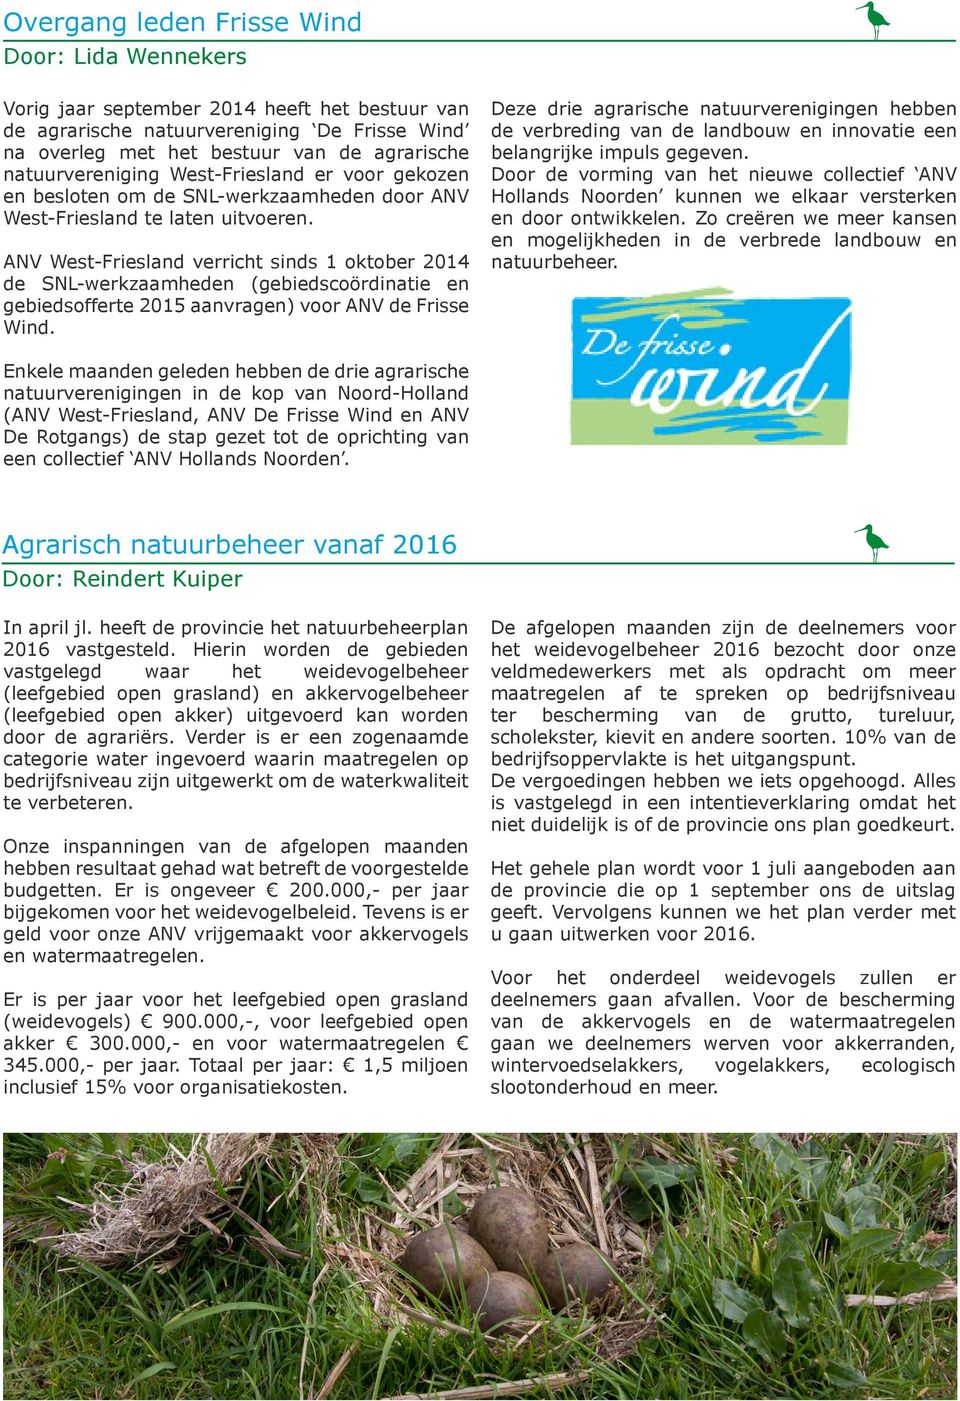 ANV West-Friesland verricht sinds 1 oktober 2014 de SNL-werkzaamheden (gebiedscoördinatie en gebiedsofferte 2015 aanvragen) voor ANV de Frisse Wind.